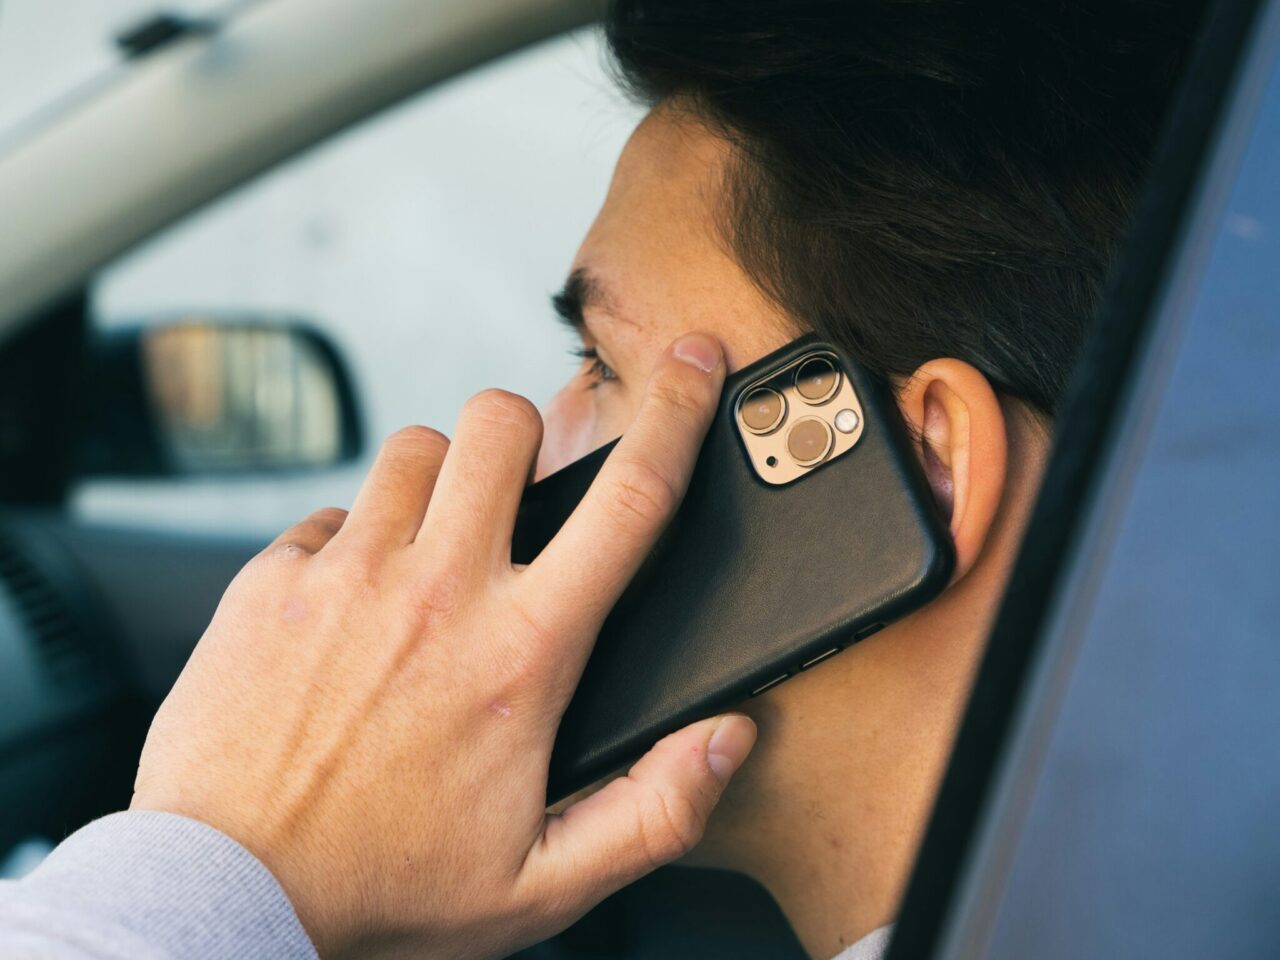 Zbieranie danych. Mężczyzna rozmawia przez telefon komórkowy trzymany przy uchu, widać tylną część urządzenia z aparatami fotograficznymi.